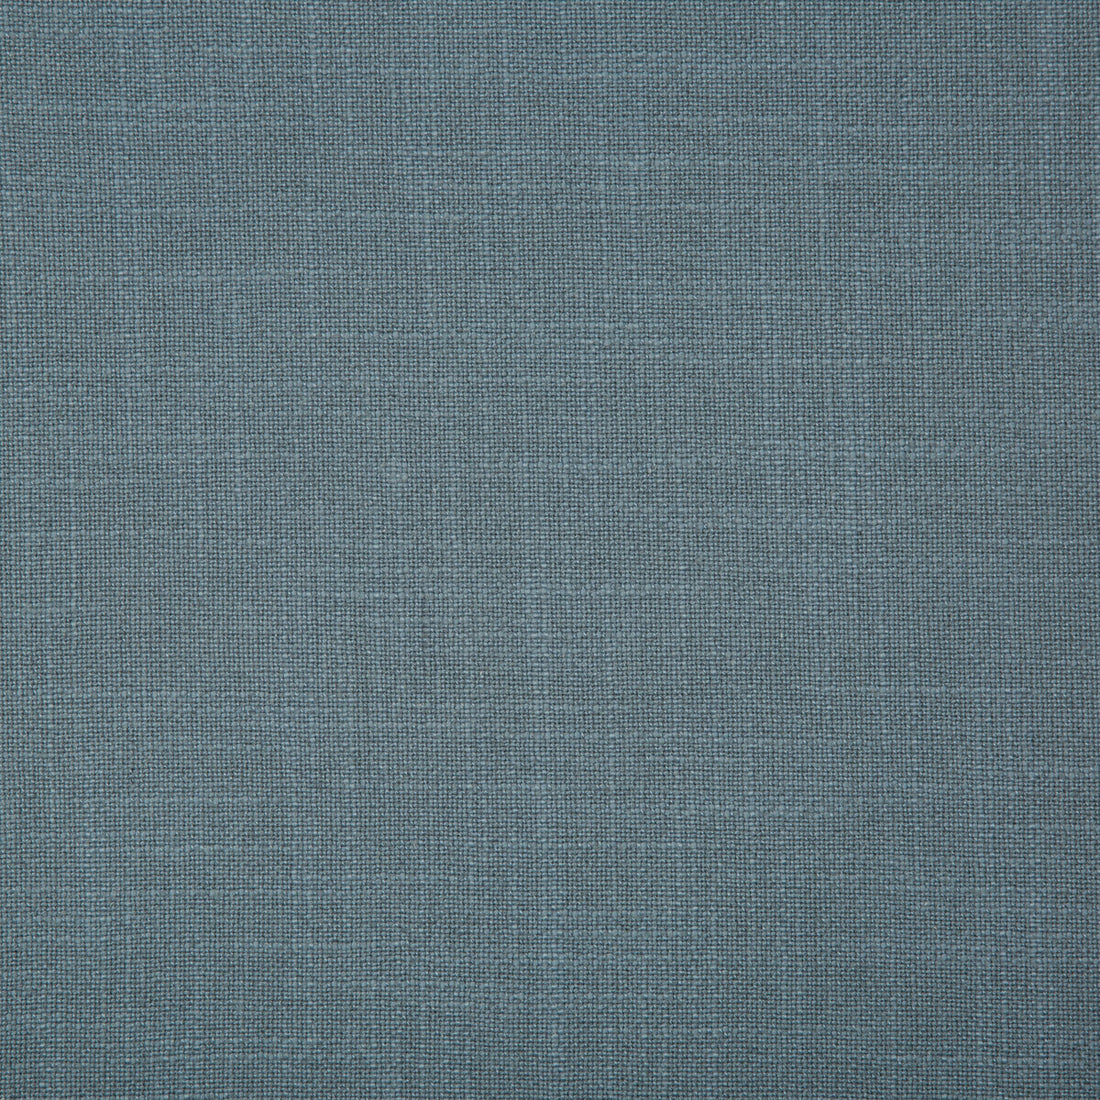 Kravet Basics fabric in 35783-5 color - pattern 35783.5.0 - by Kravet Basics